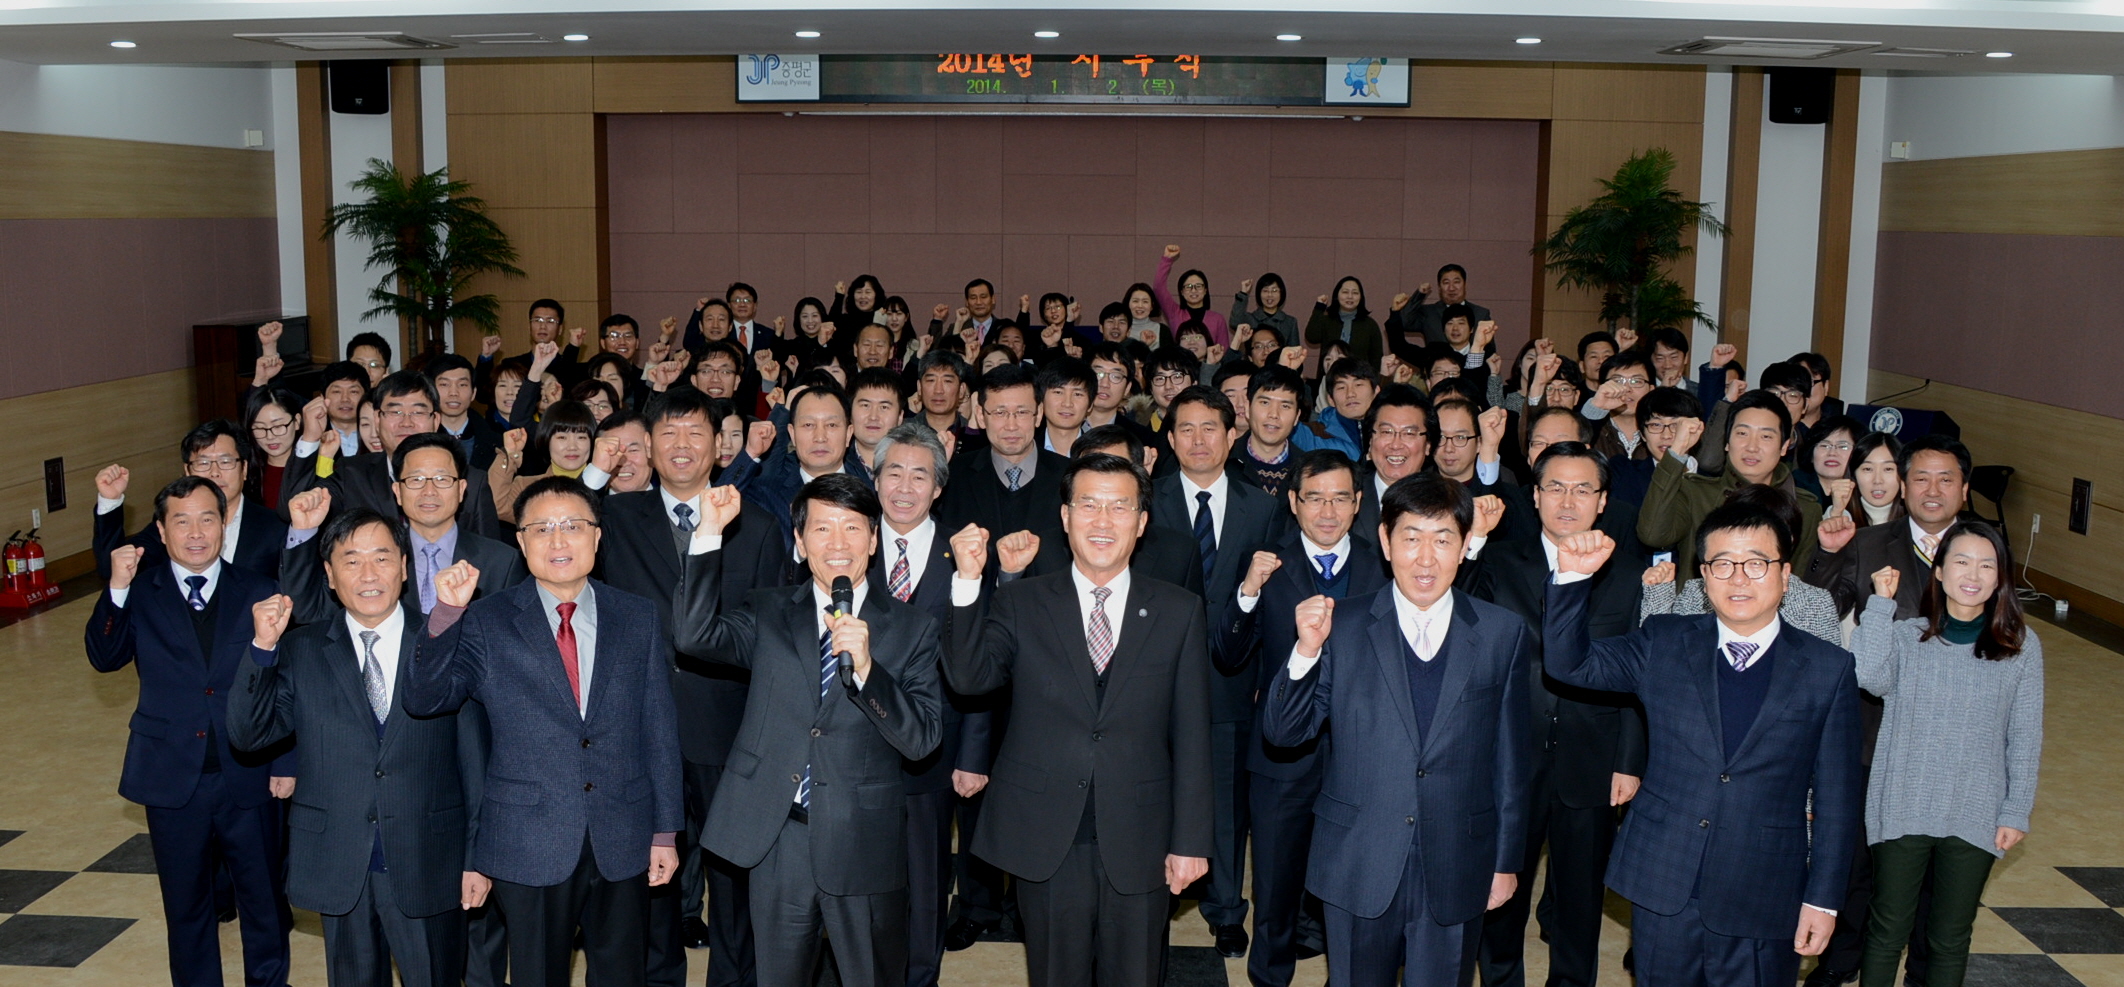 2014년도 시무식 참석